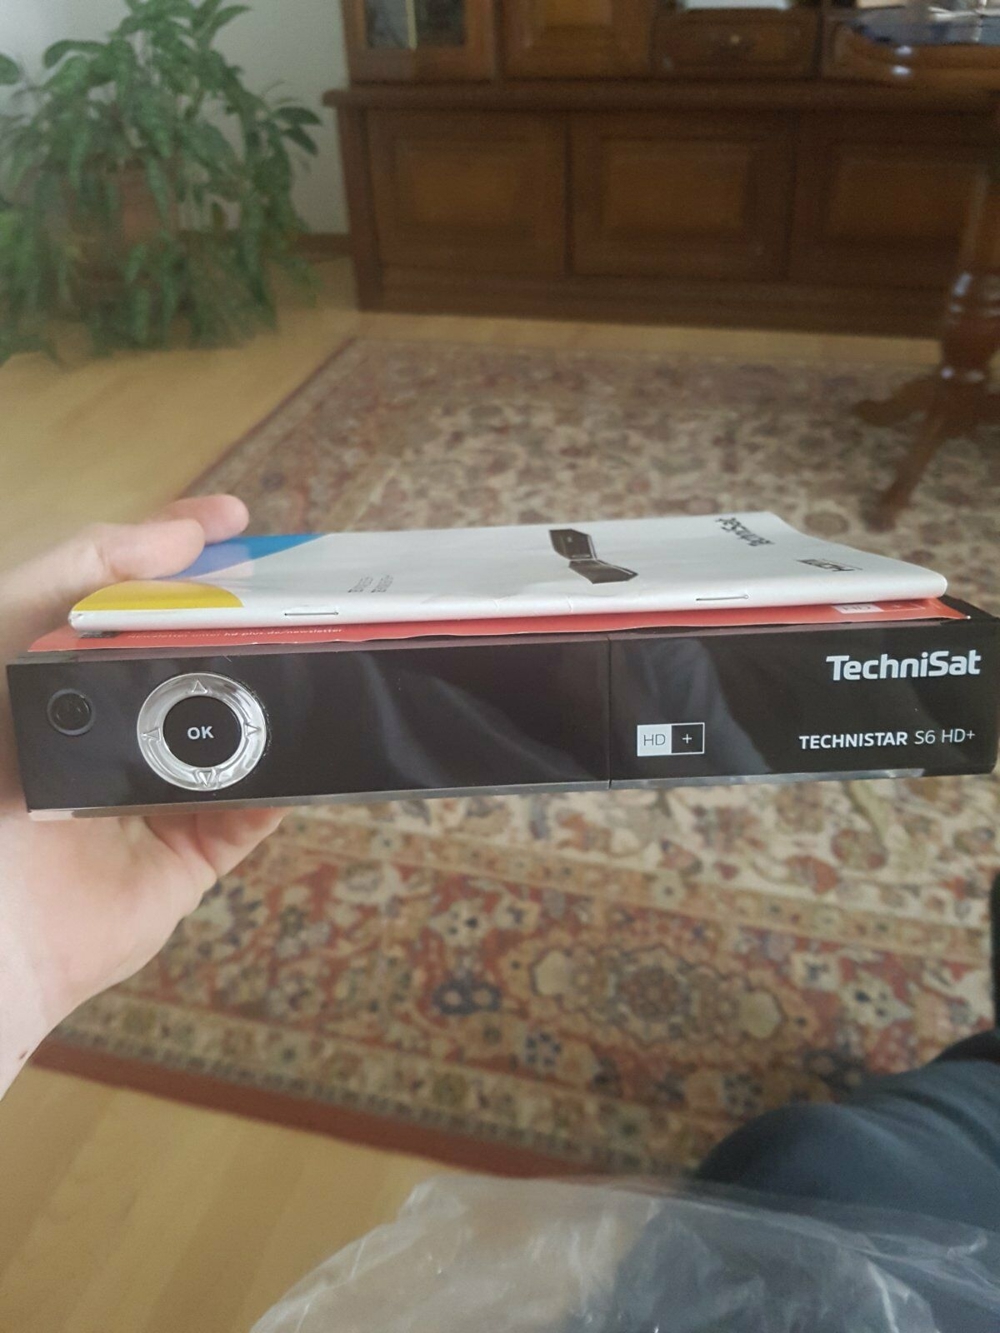 Technisat s6 hd+ / Technistar HDTV-DigitalSat-Receiver